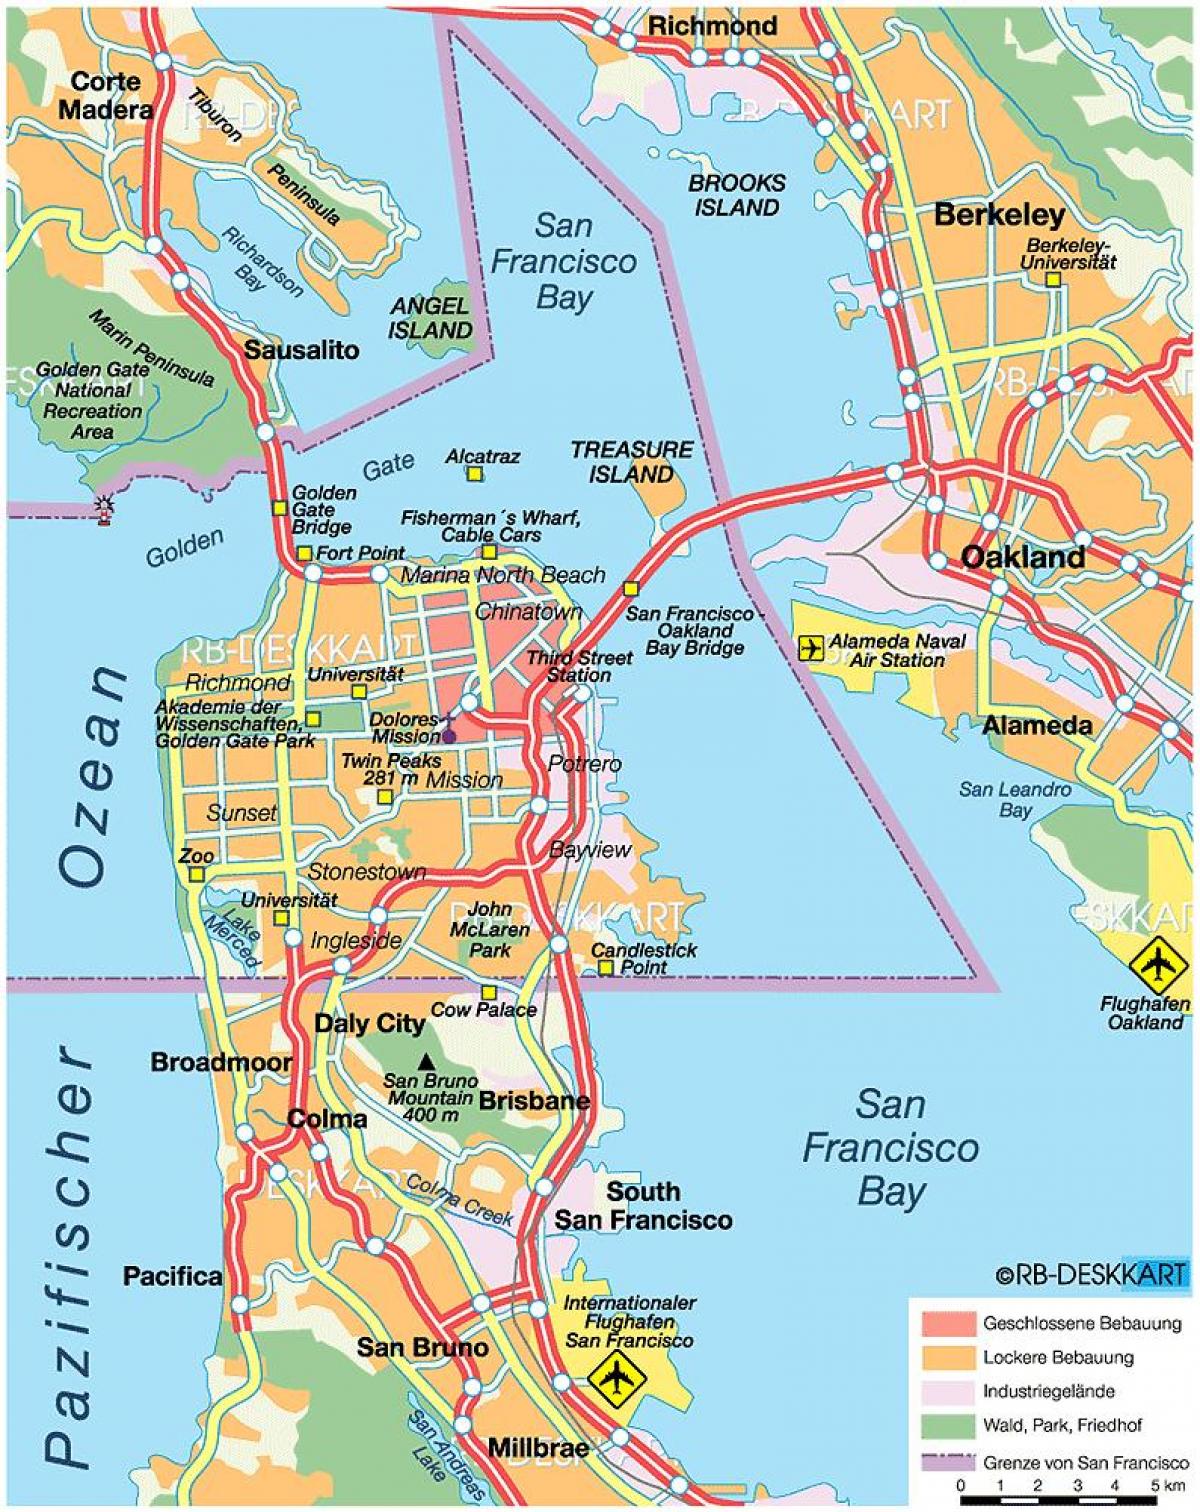 kart over east bay byer